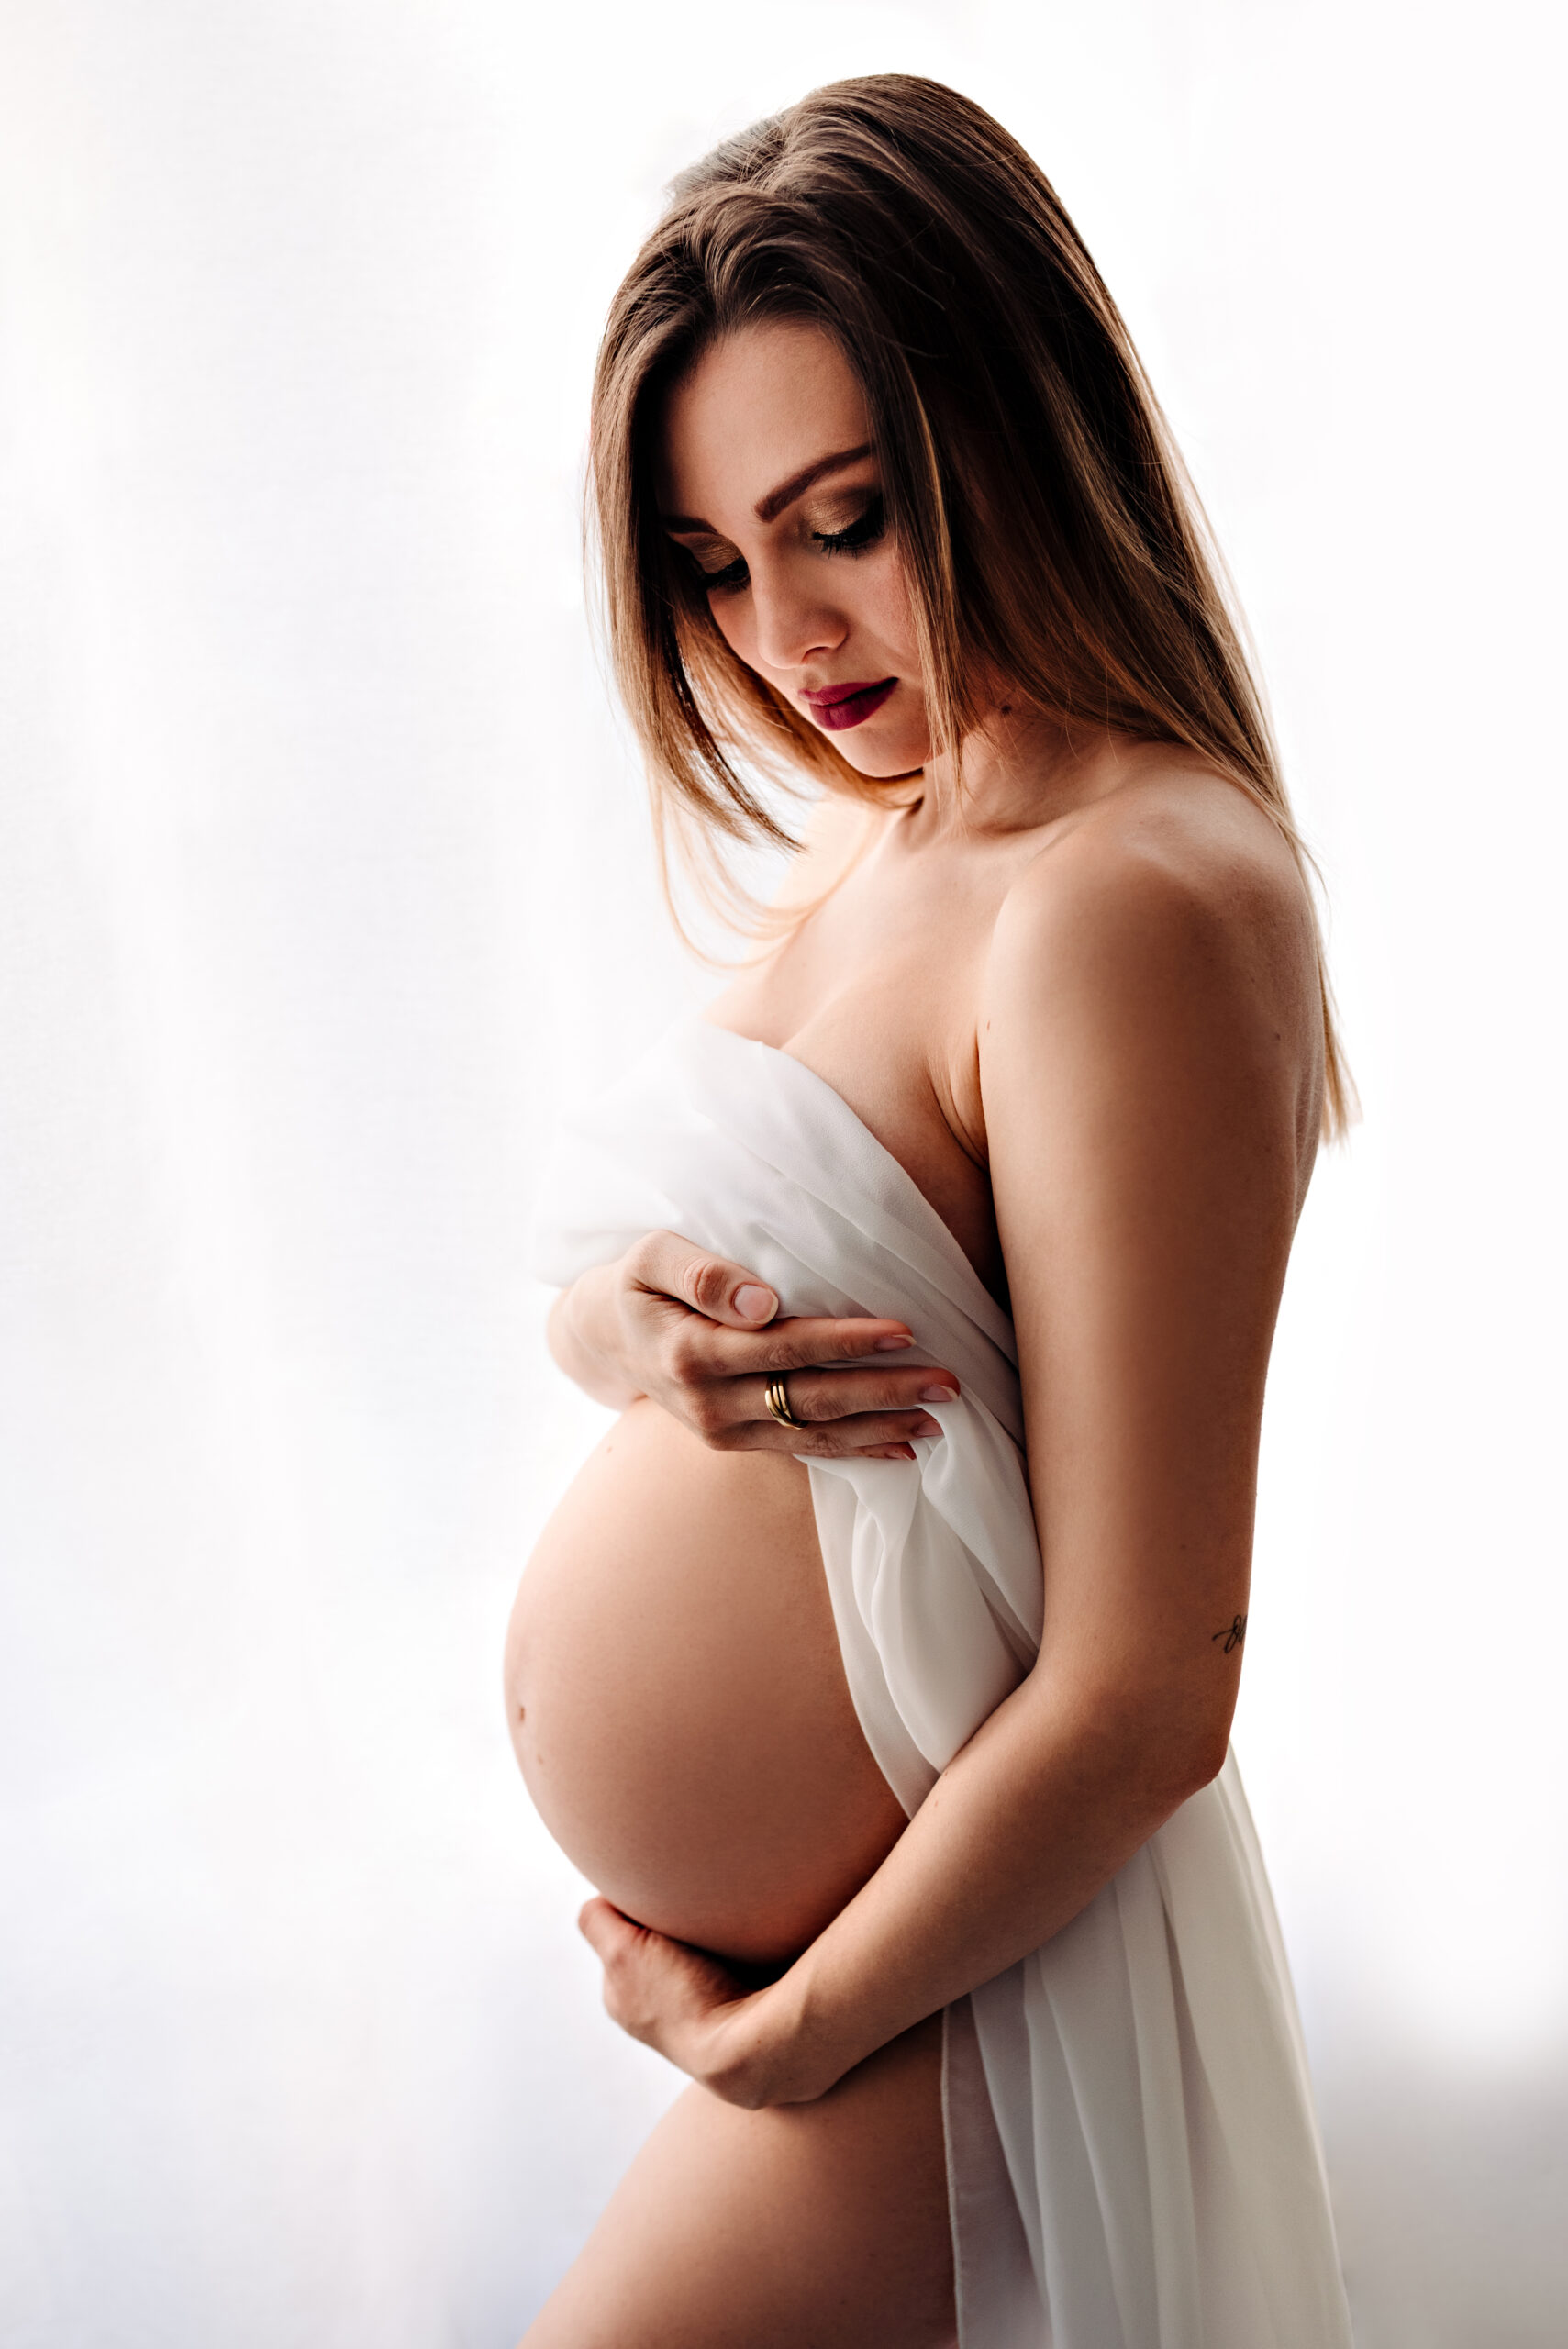 Foto artistica a colori di maternità di una donna incinta, coperta da un telo bianco. Fotografia artistica di maternità di una donna incinta a colori, con velo bianco Trieste